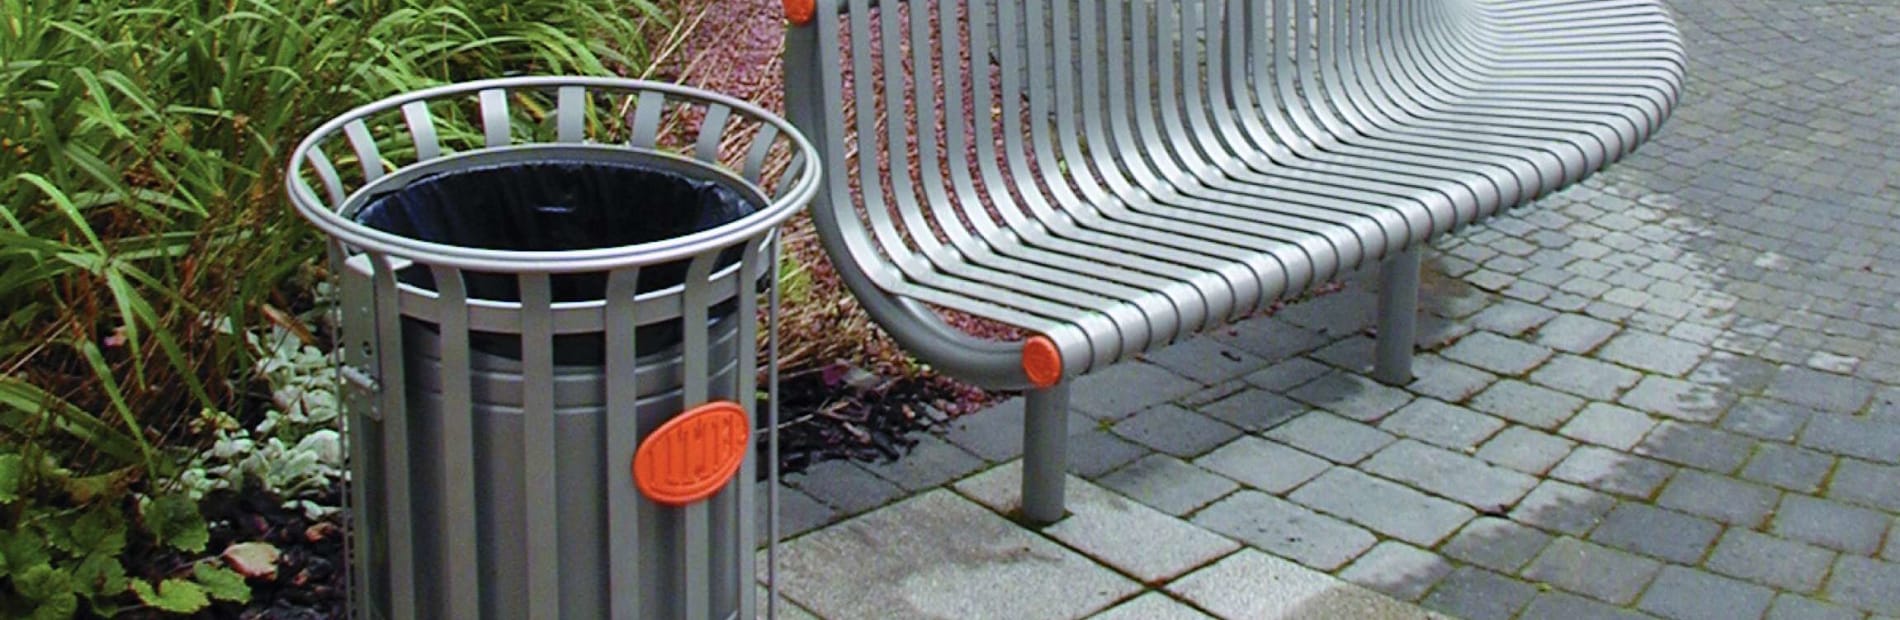 festival litter bin next to a bench